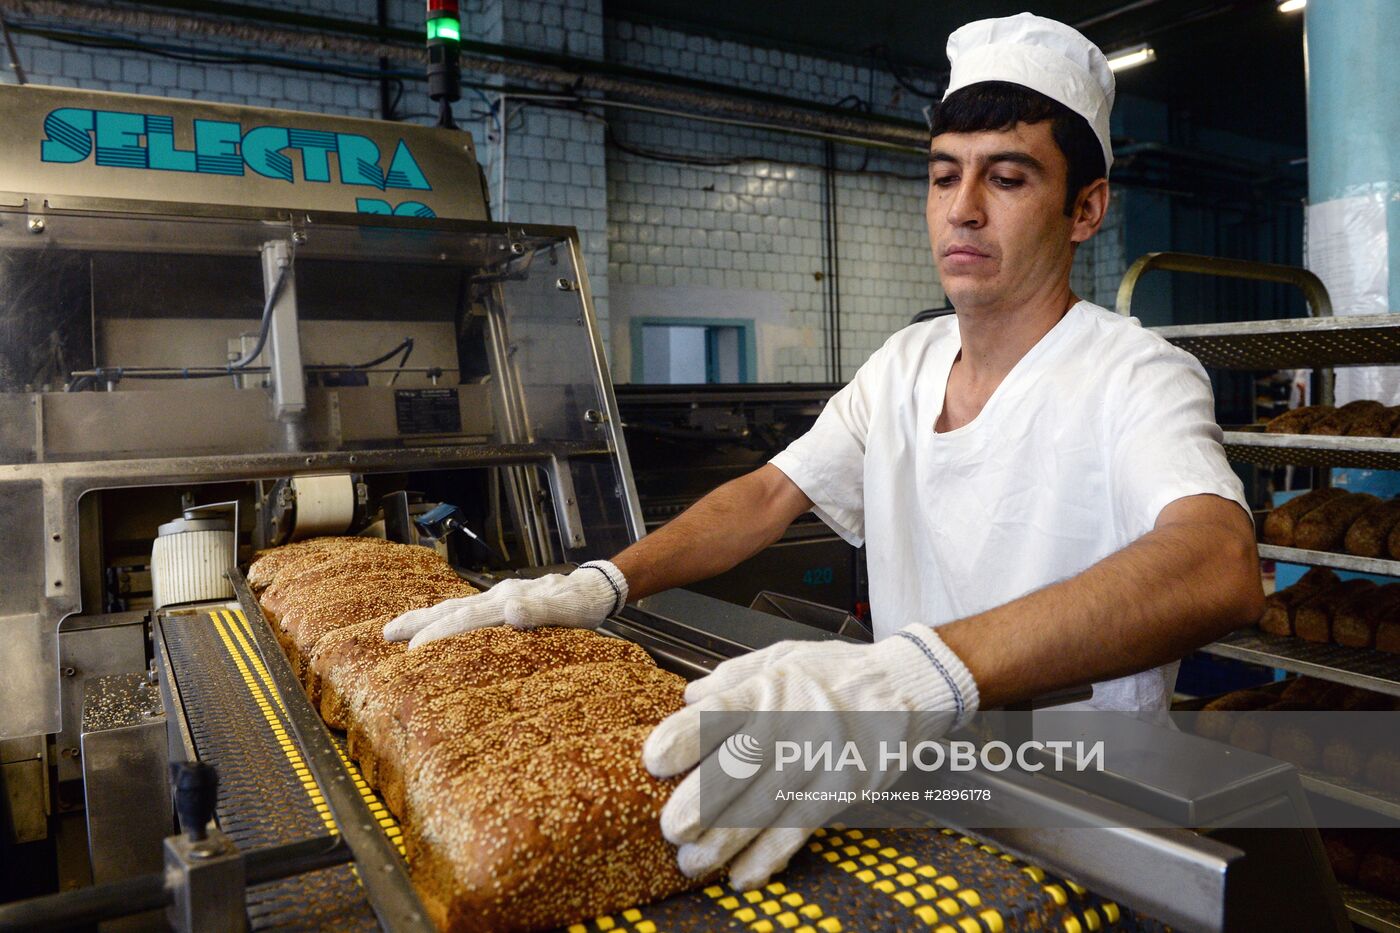 Работа ЗАО "Хлебкомбинат "Инской" в Новосибирске